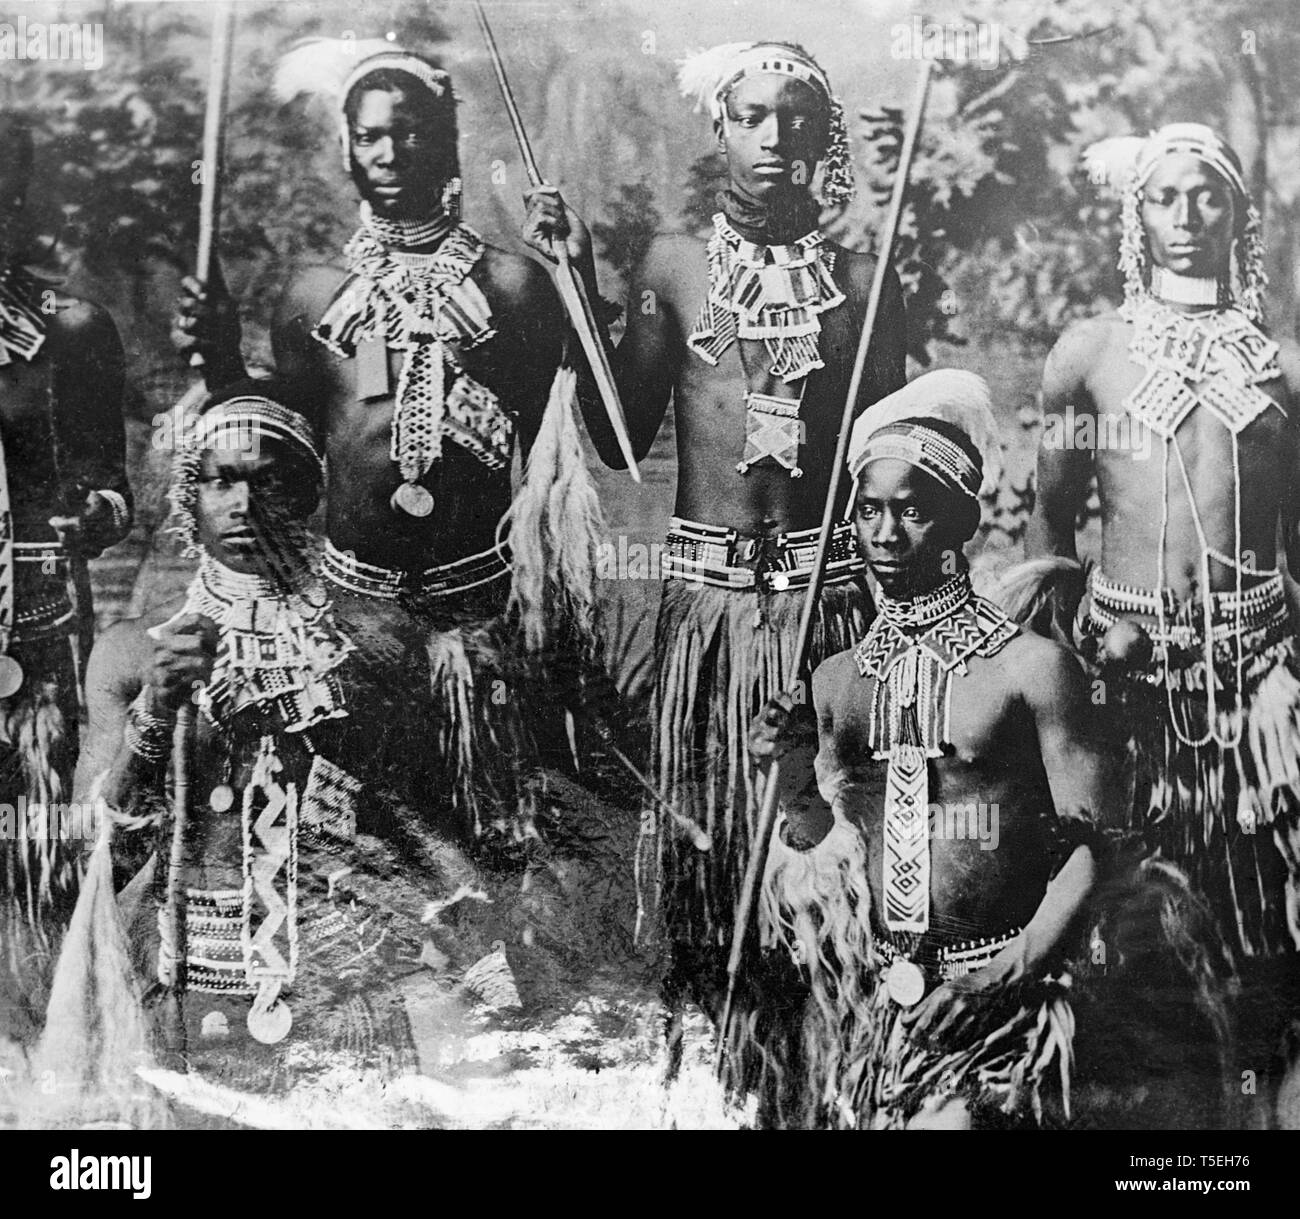 Une photographie de Zulu warriors durant la Guerre des Boers en Afrique du Sud. Banque D'Images